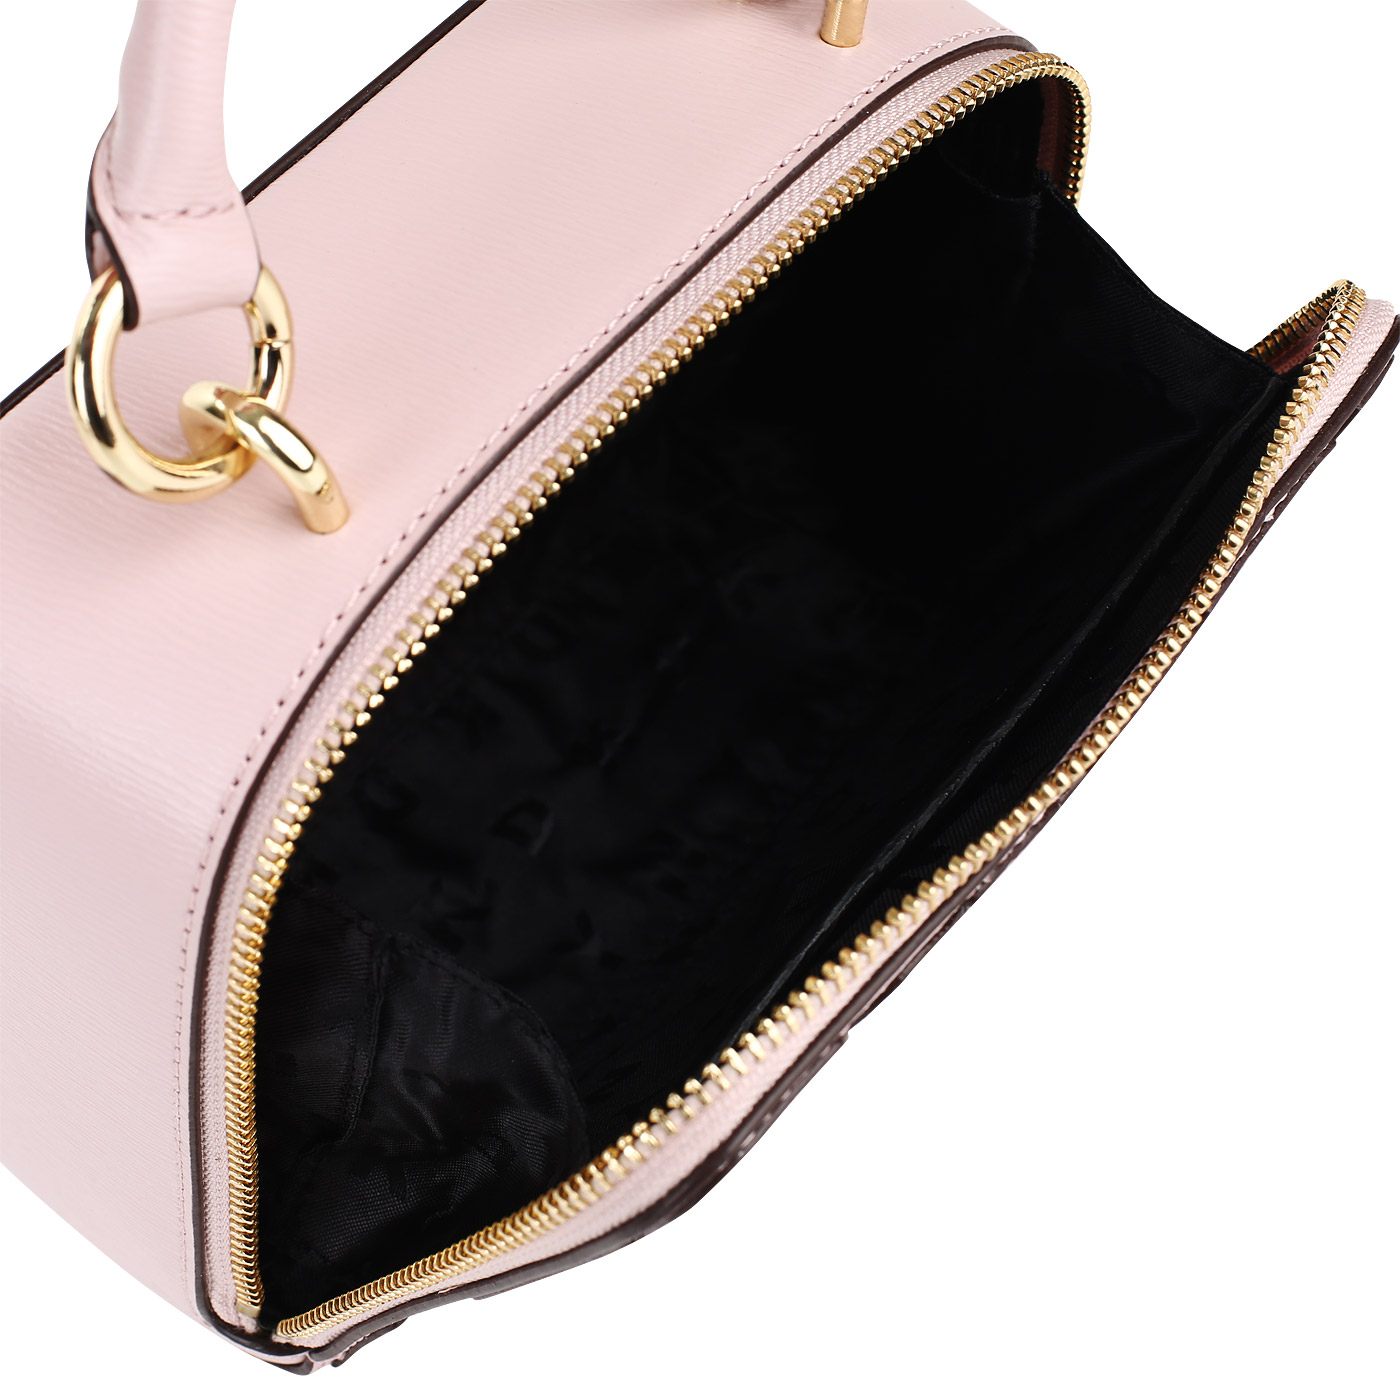 Розовая кожаная сумочка DKNY Sara